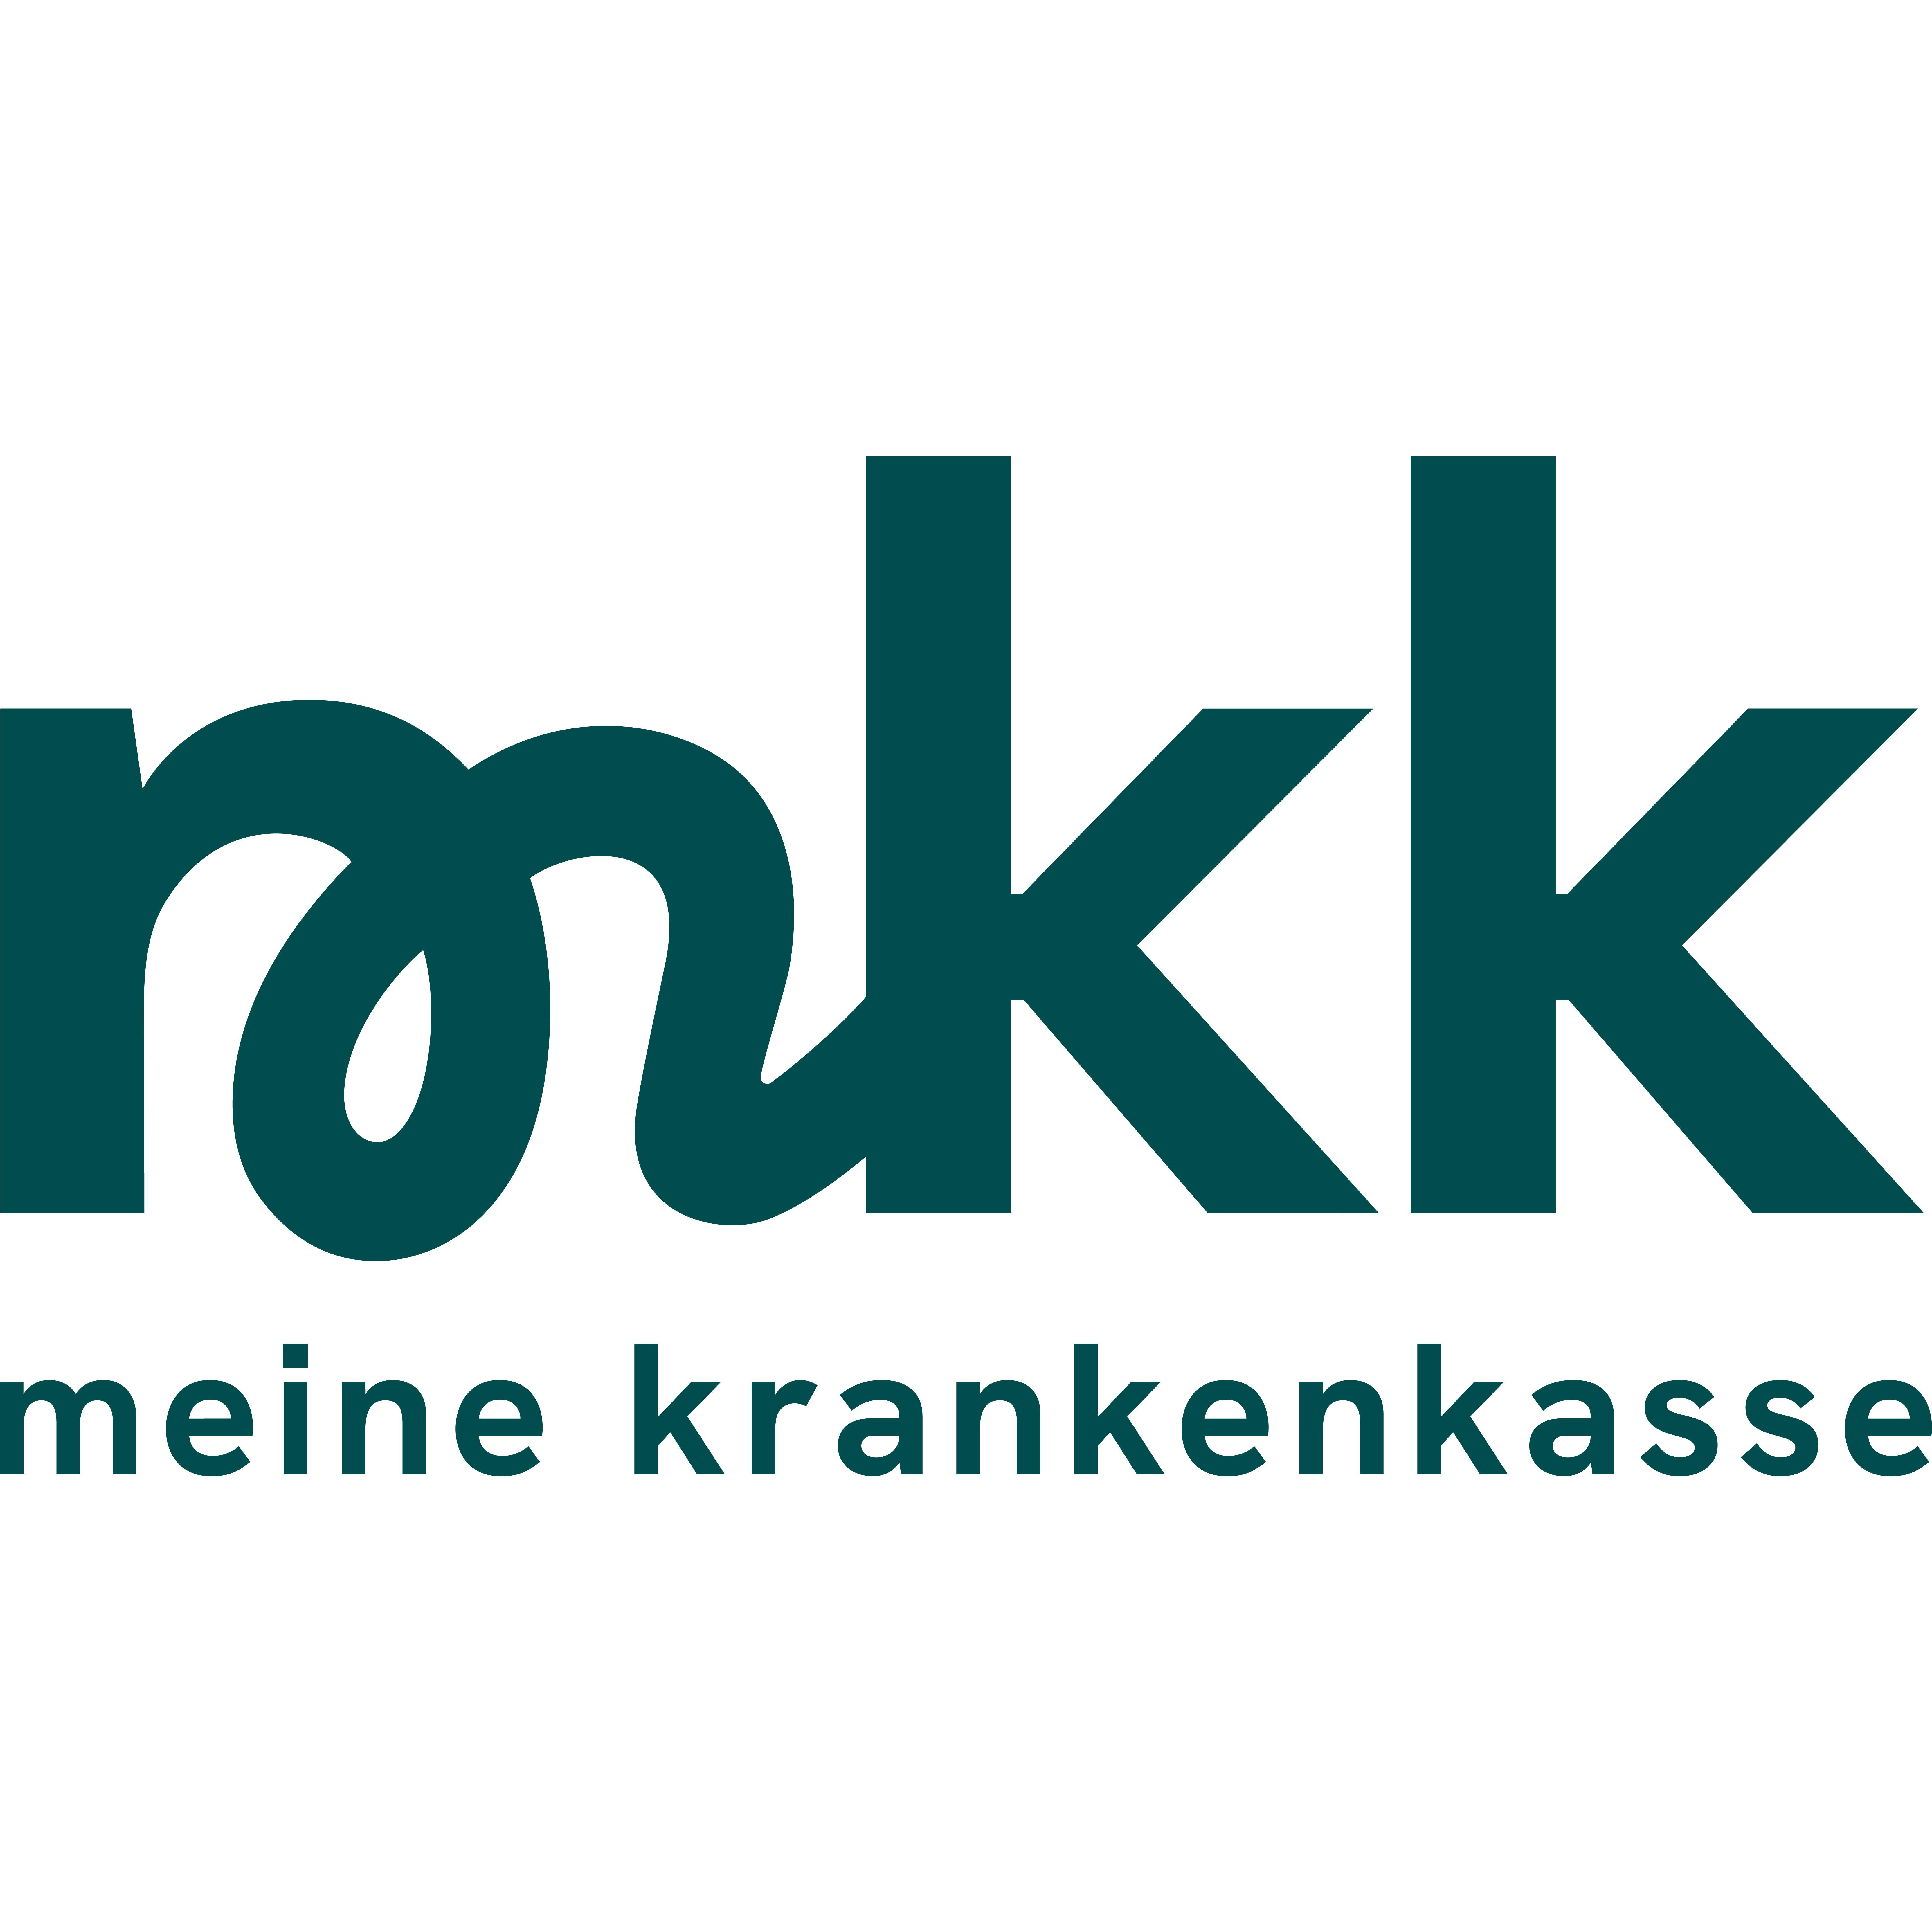 mkk - meine krankenkasse in Oelde - Logo